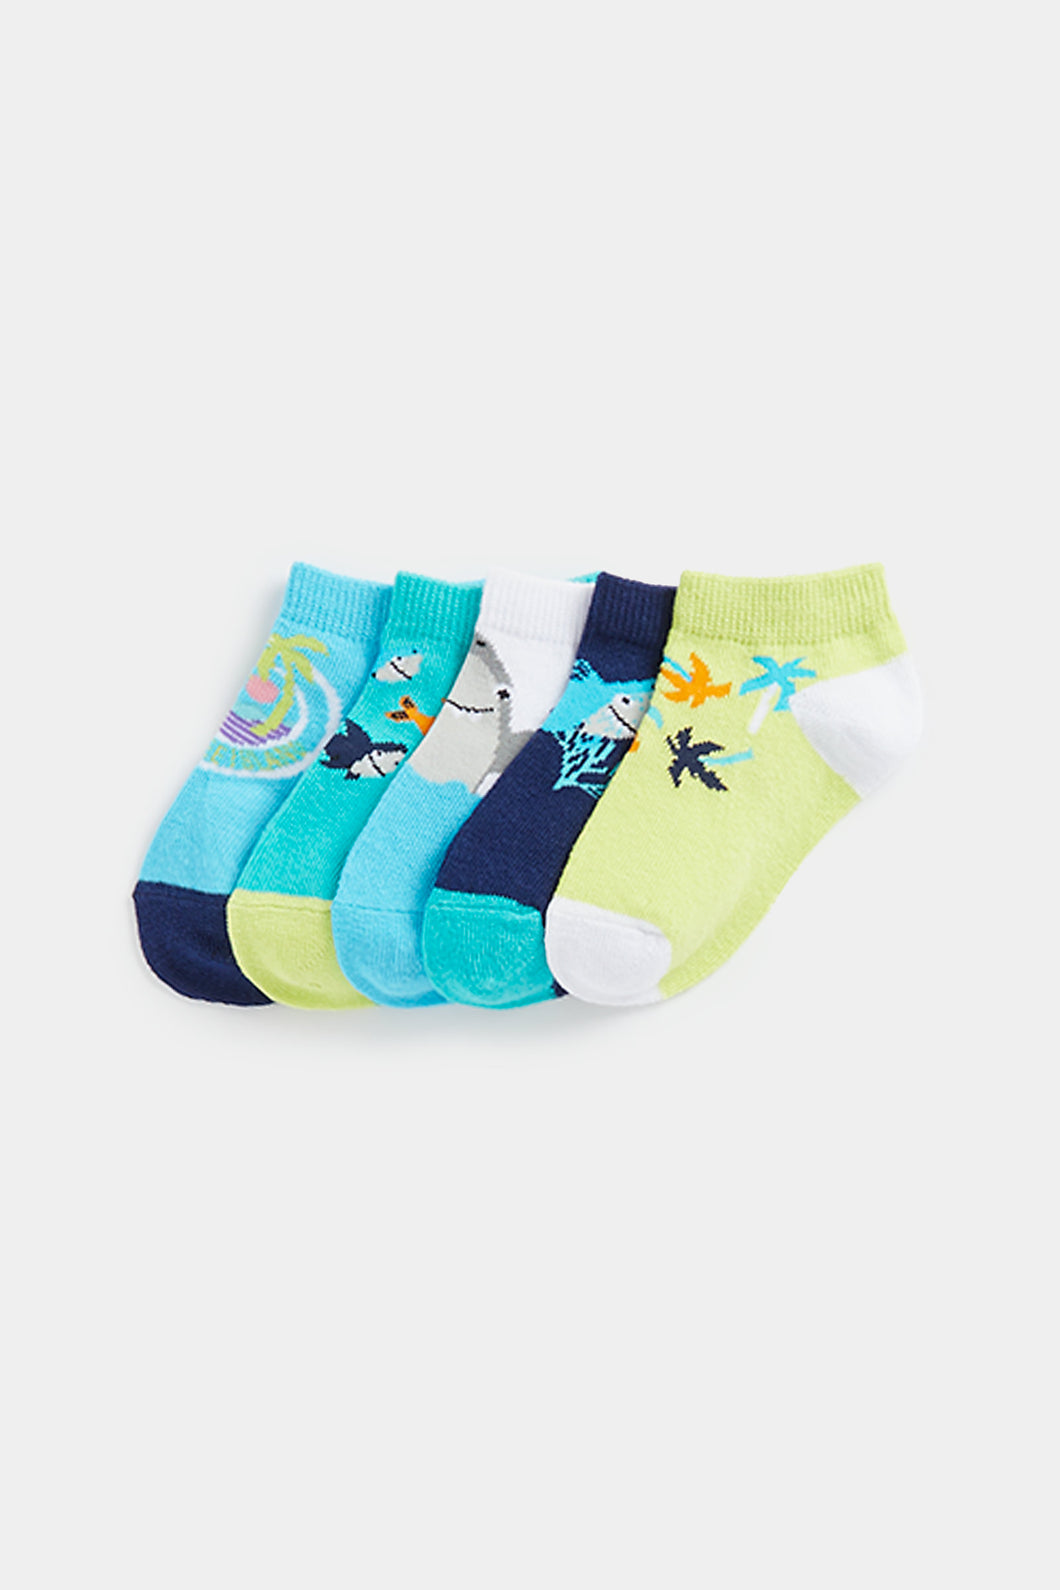 Mothercare Shark Trainer Socks - 5 Pack